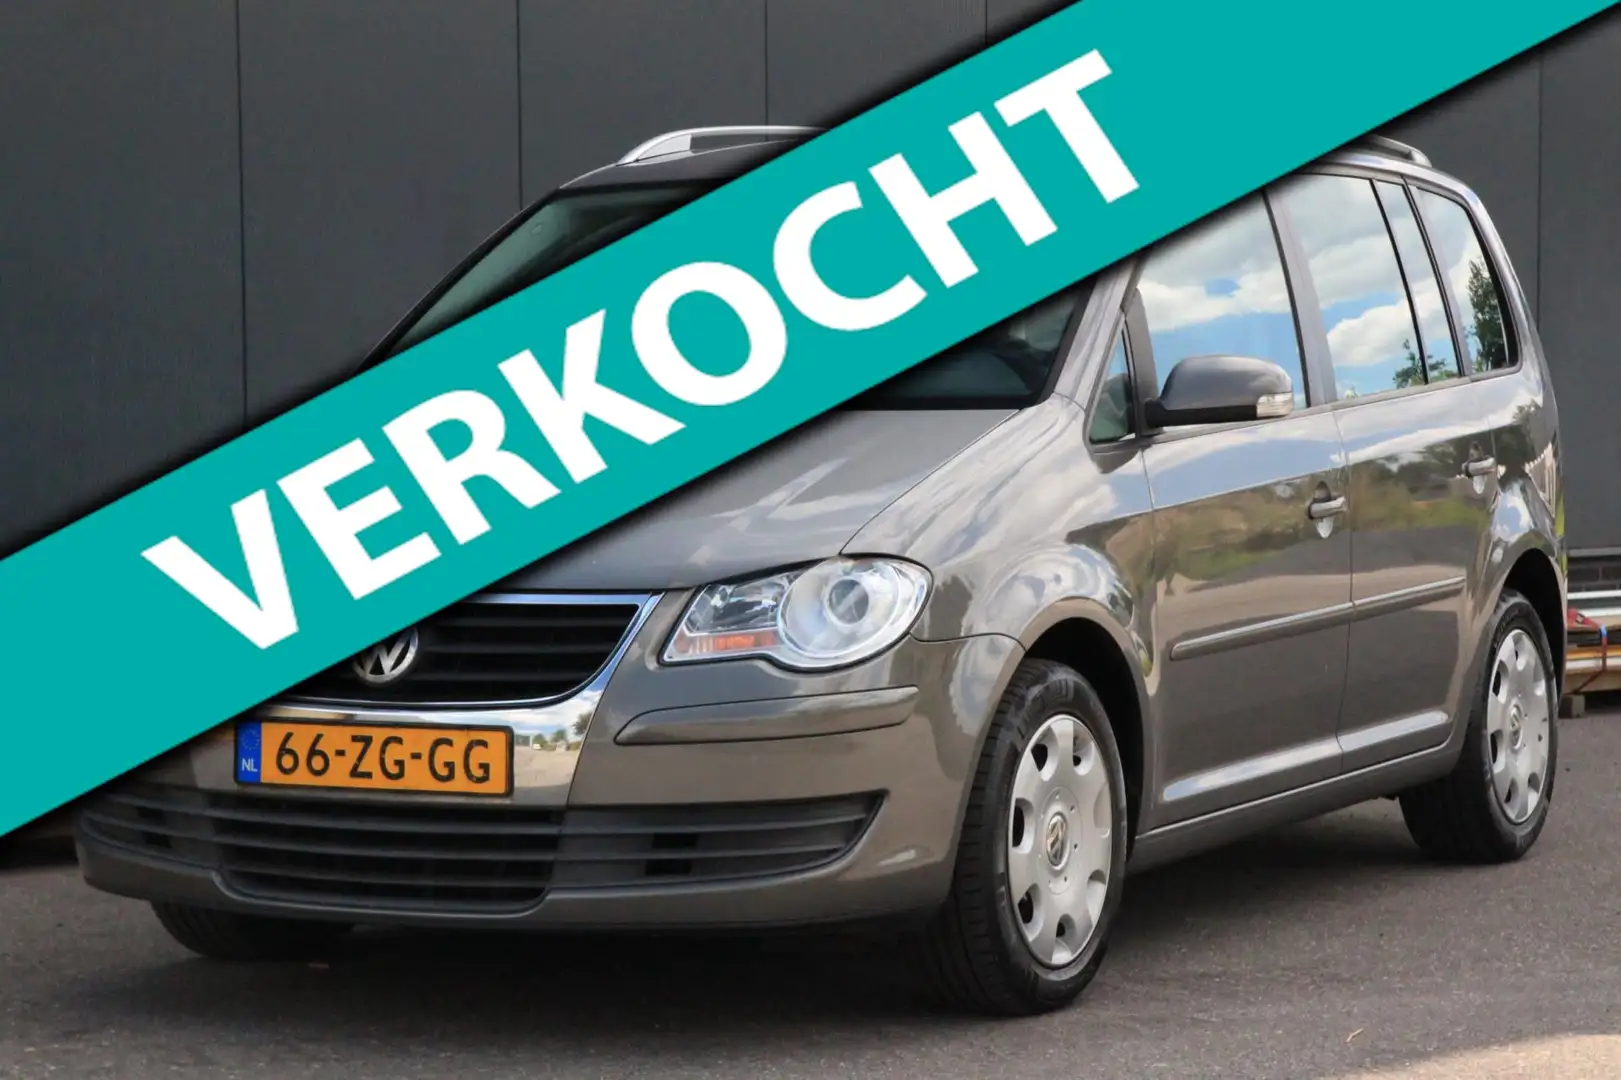 Volkswagen Touran MPV in Grijs gebruikt in Achterveld voor € 3.850,-